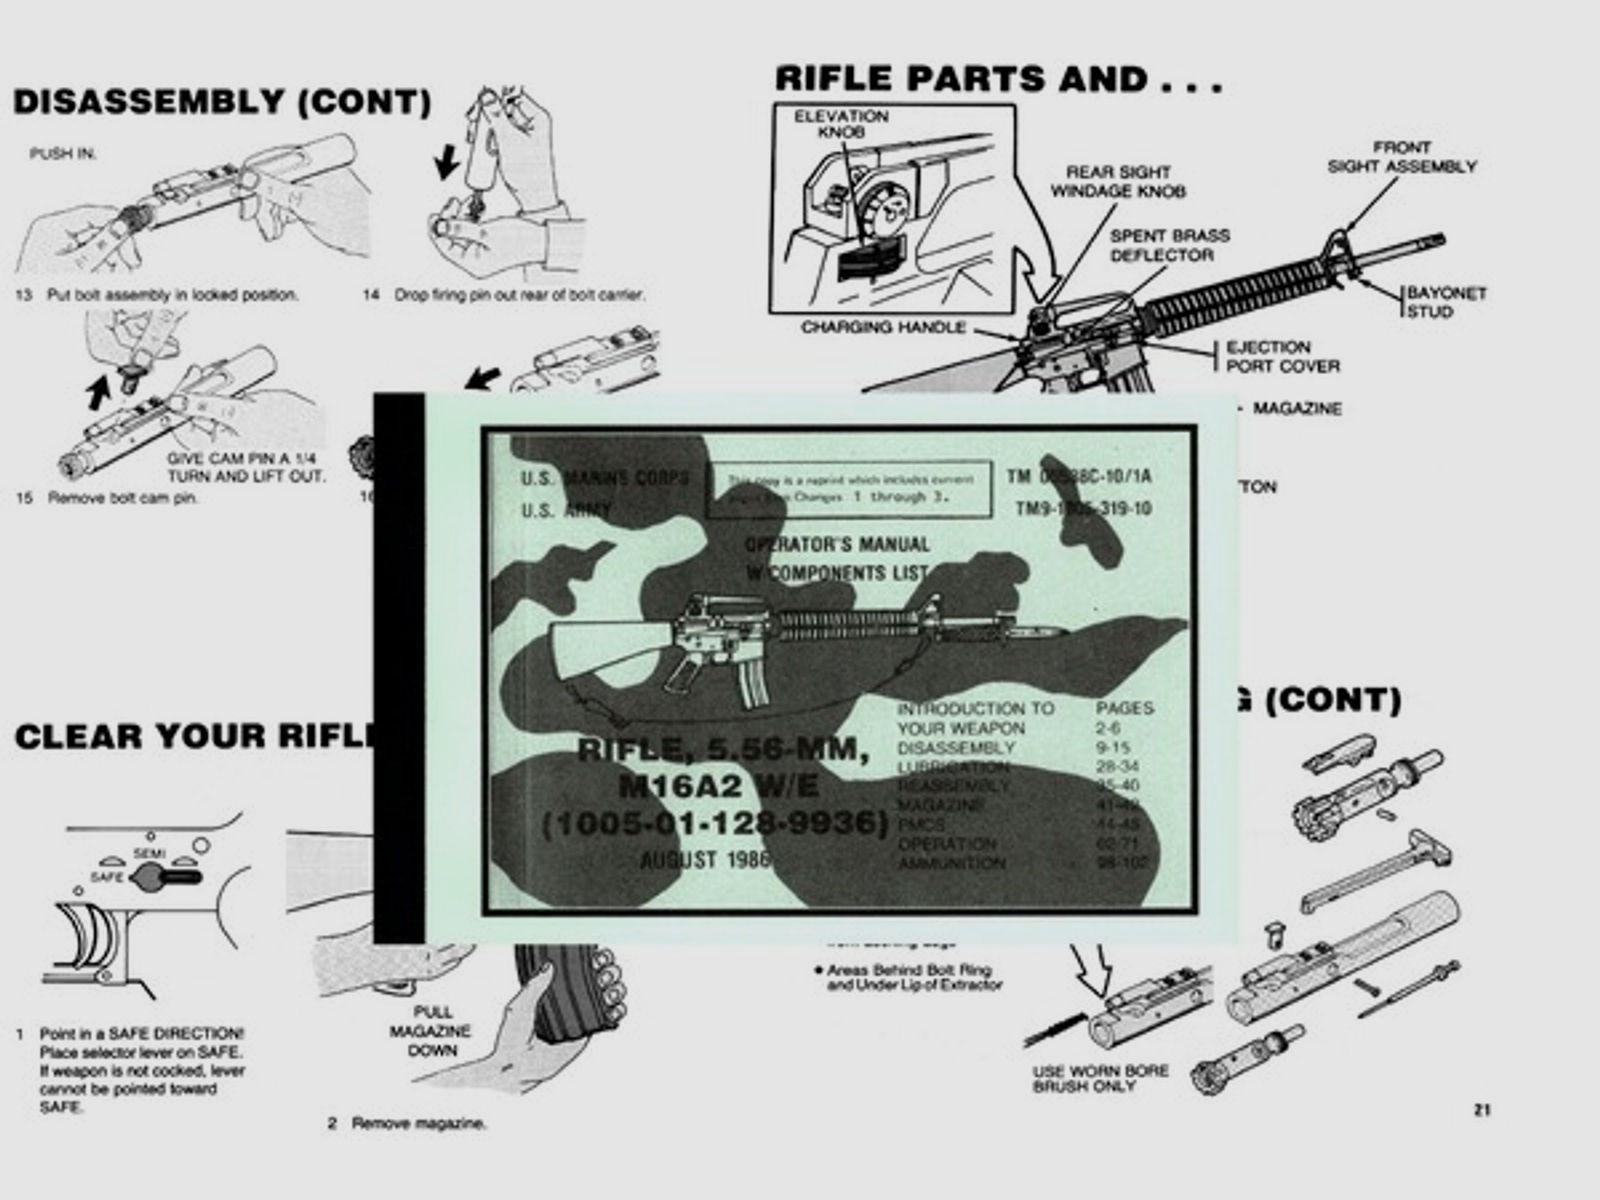 Nachdruck der US-Dienstvorschrift für das M16 A2 Sturmgewehr von 1986